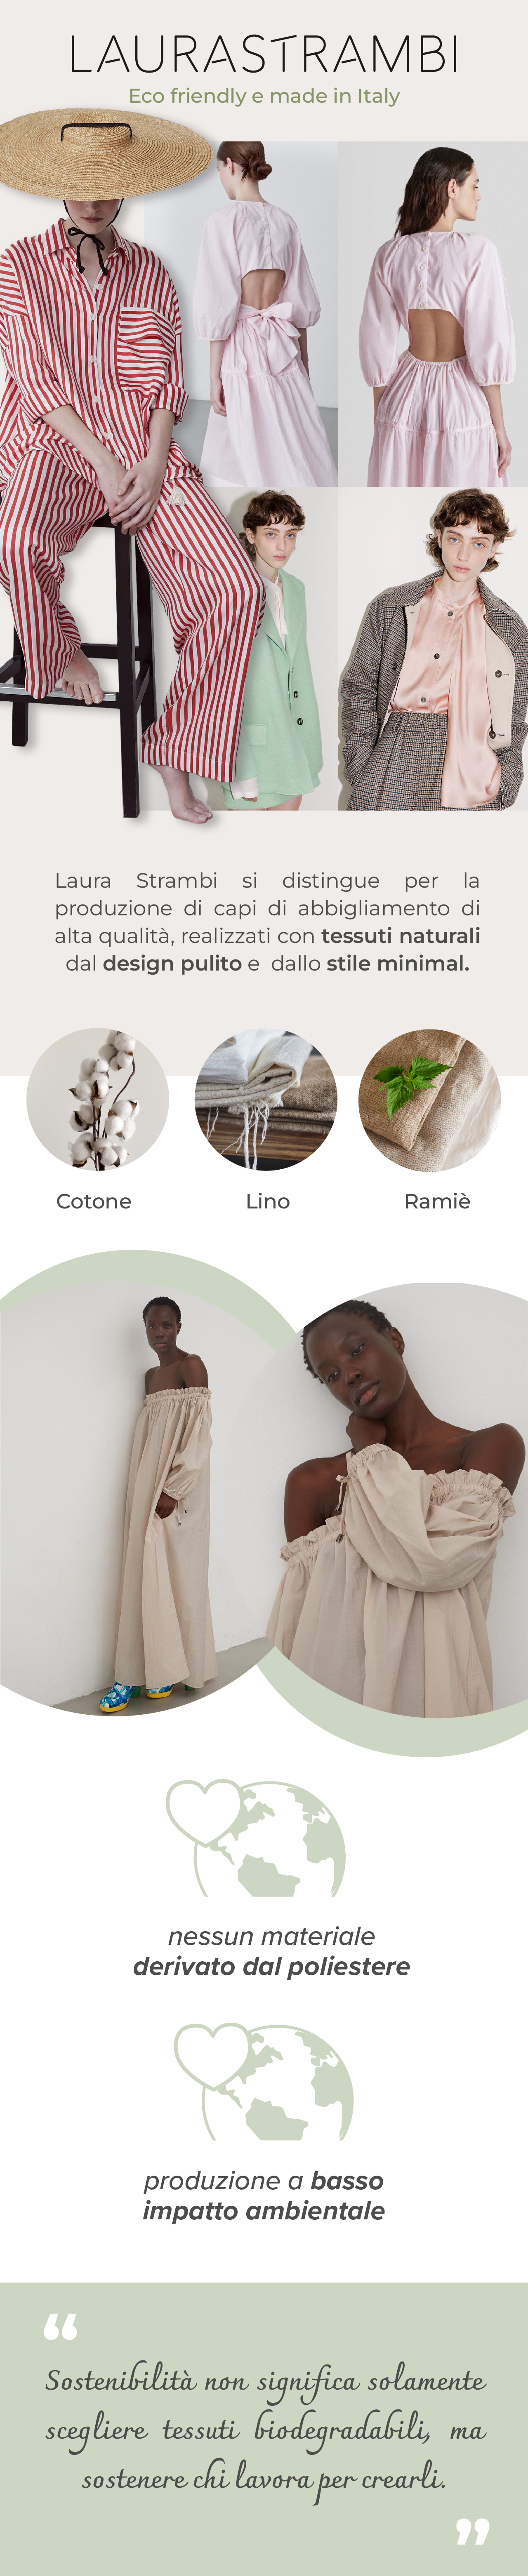 laura-strambi-crowdfunding-industria-moda-sostenibile